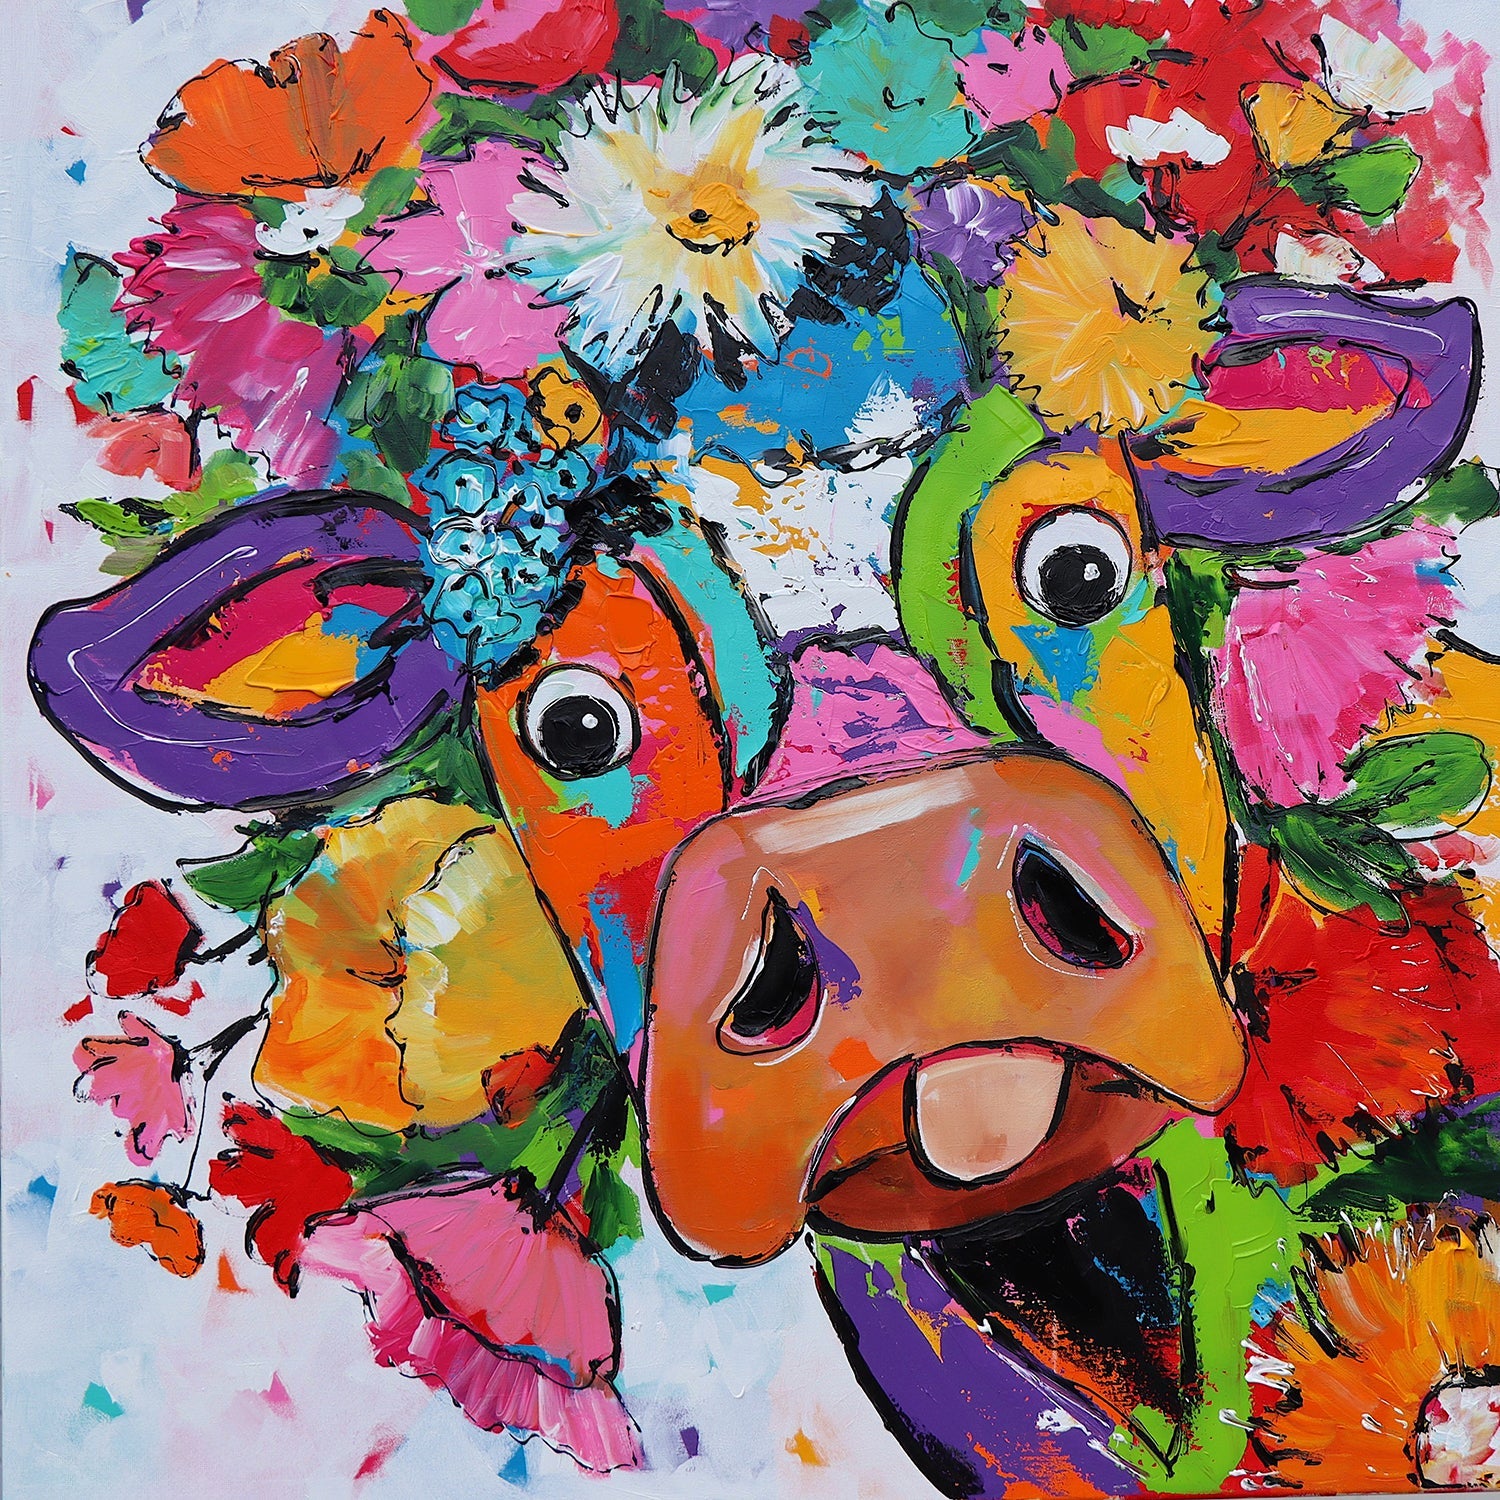 Fröhliche Malerei - Kuh mit Blumen